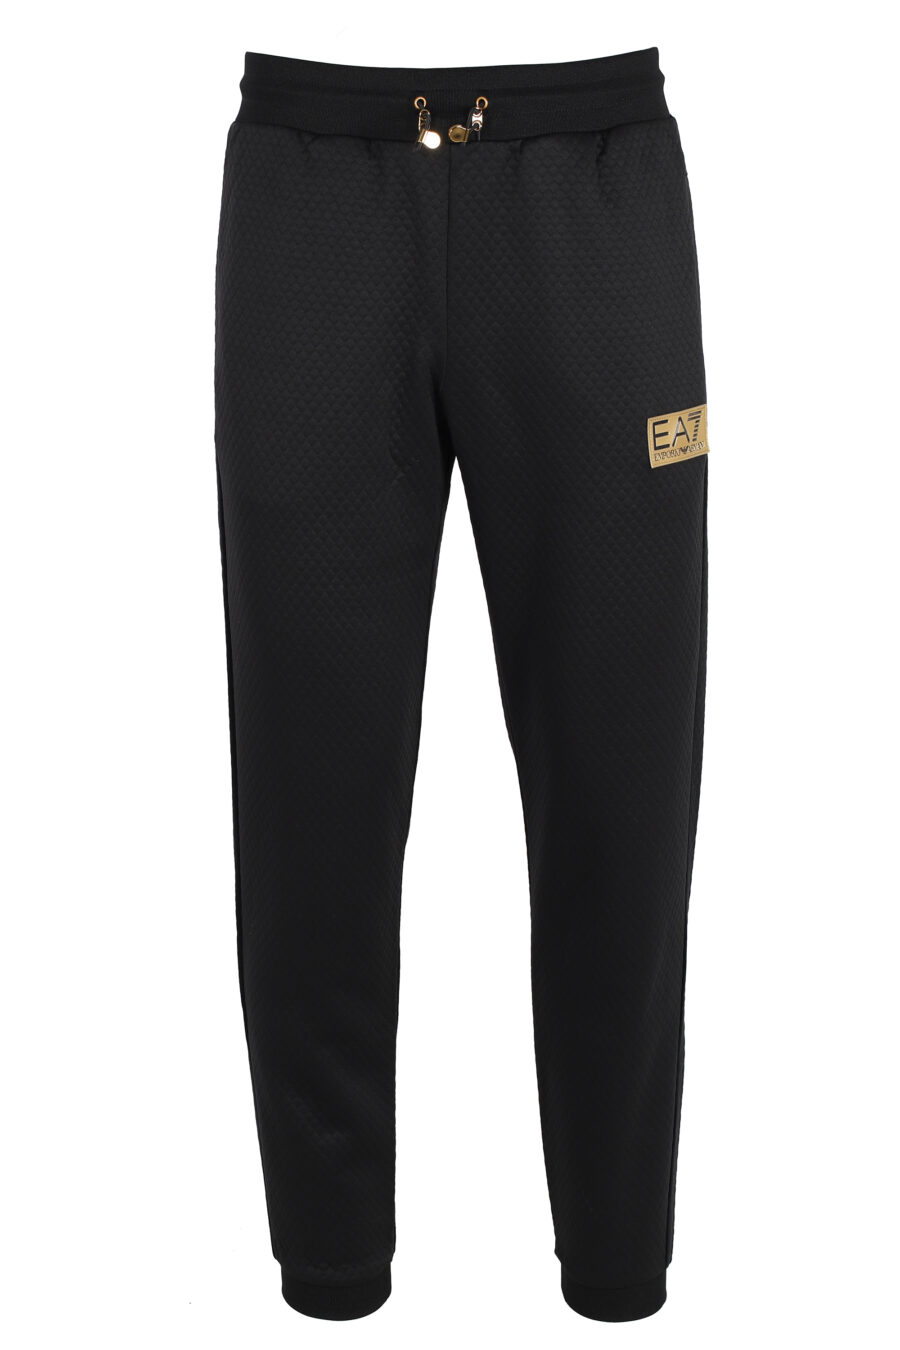 Pantalón de chándal negro con logo placa dorada "lux identity" - IMG 4814